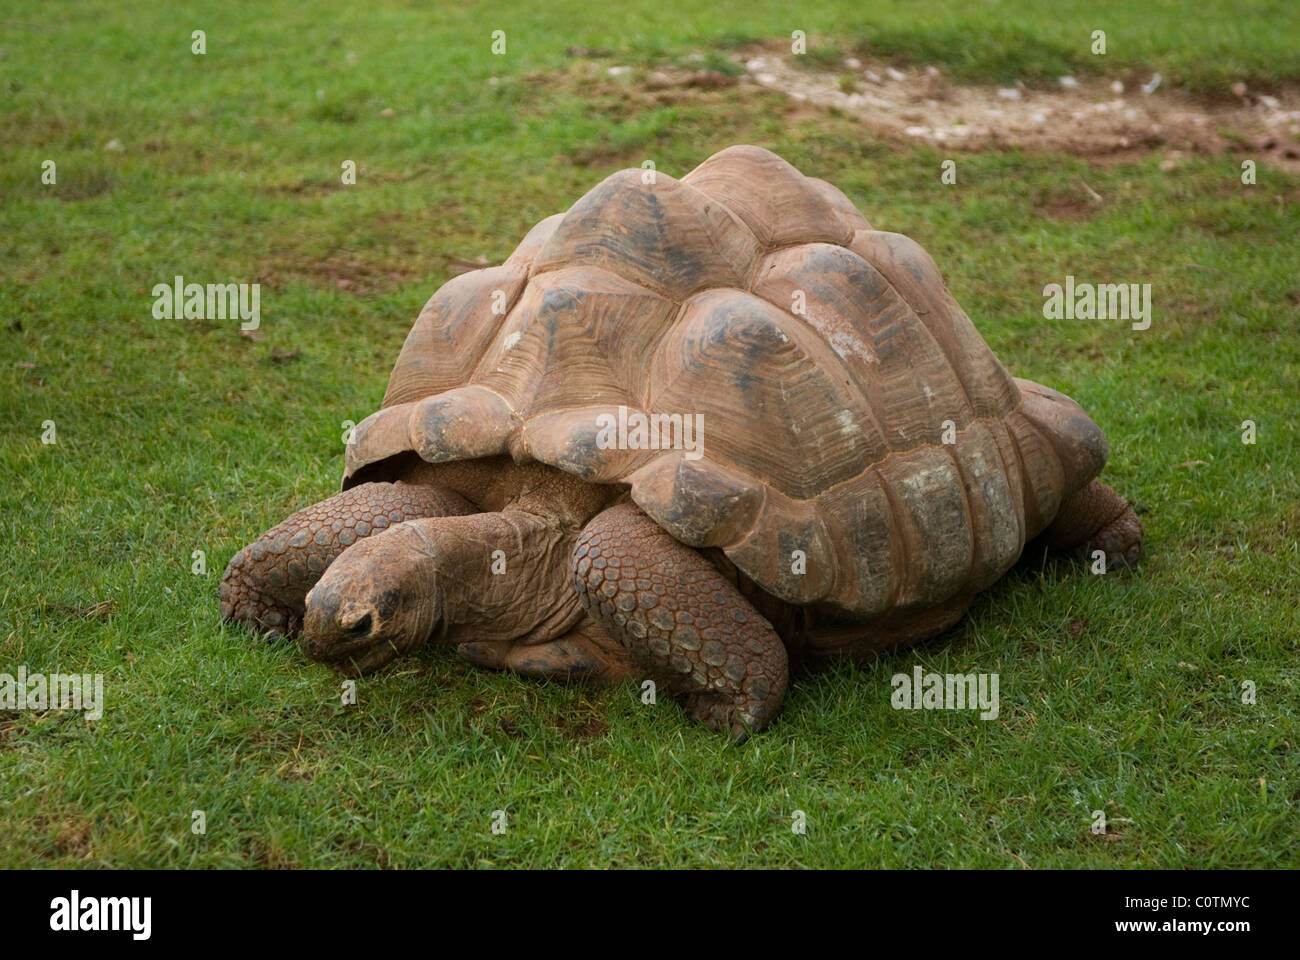 La tortue géante d'Aldabra (Aldabrachelys gigantea) se nourrissent d'herbe Banque D'Images